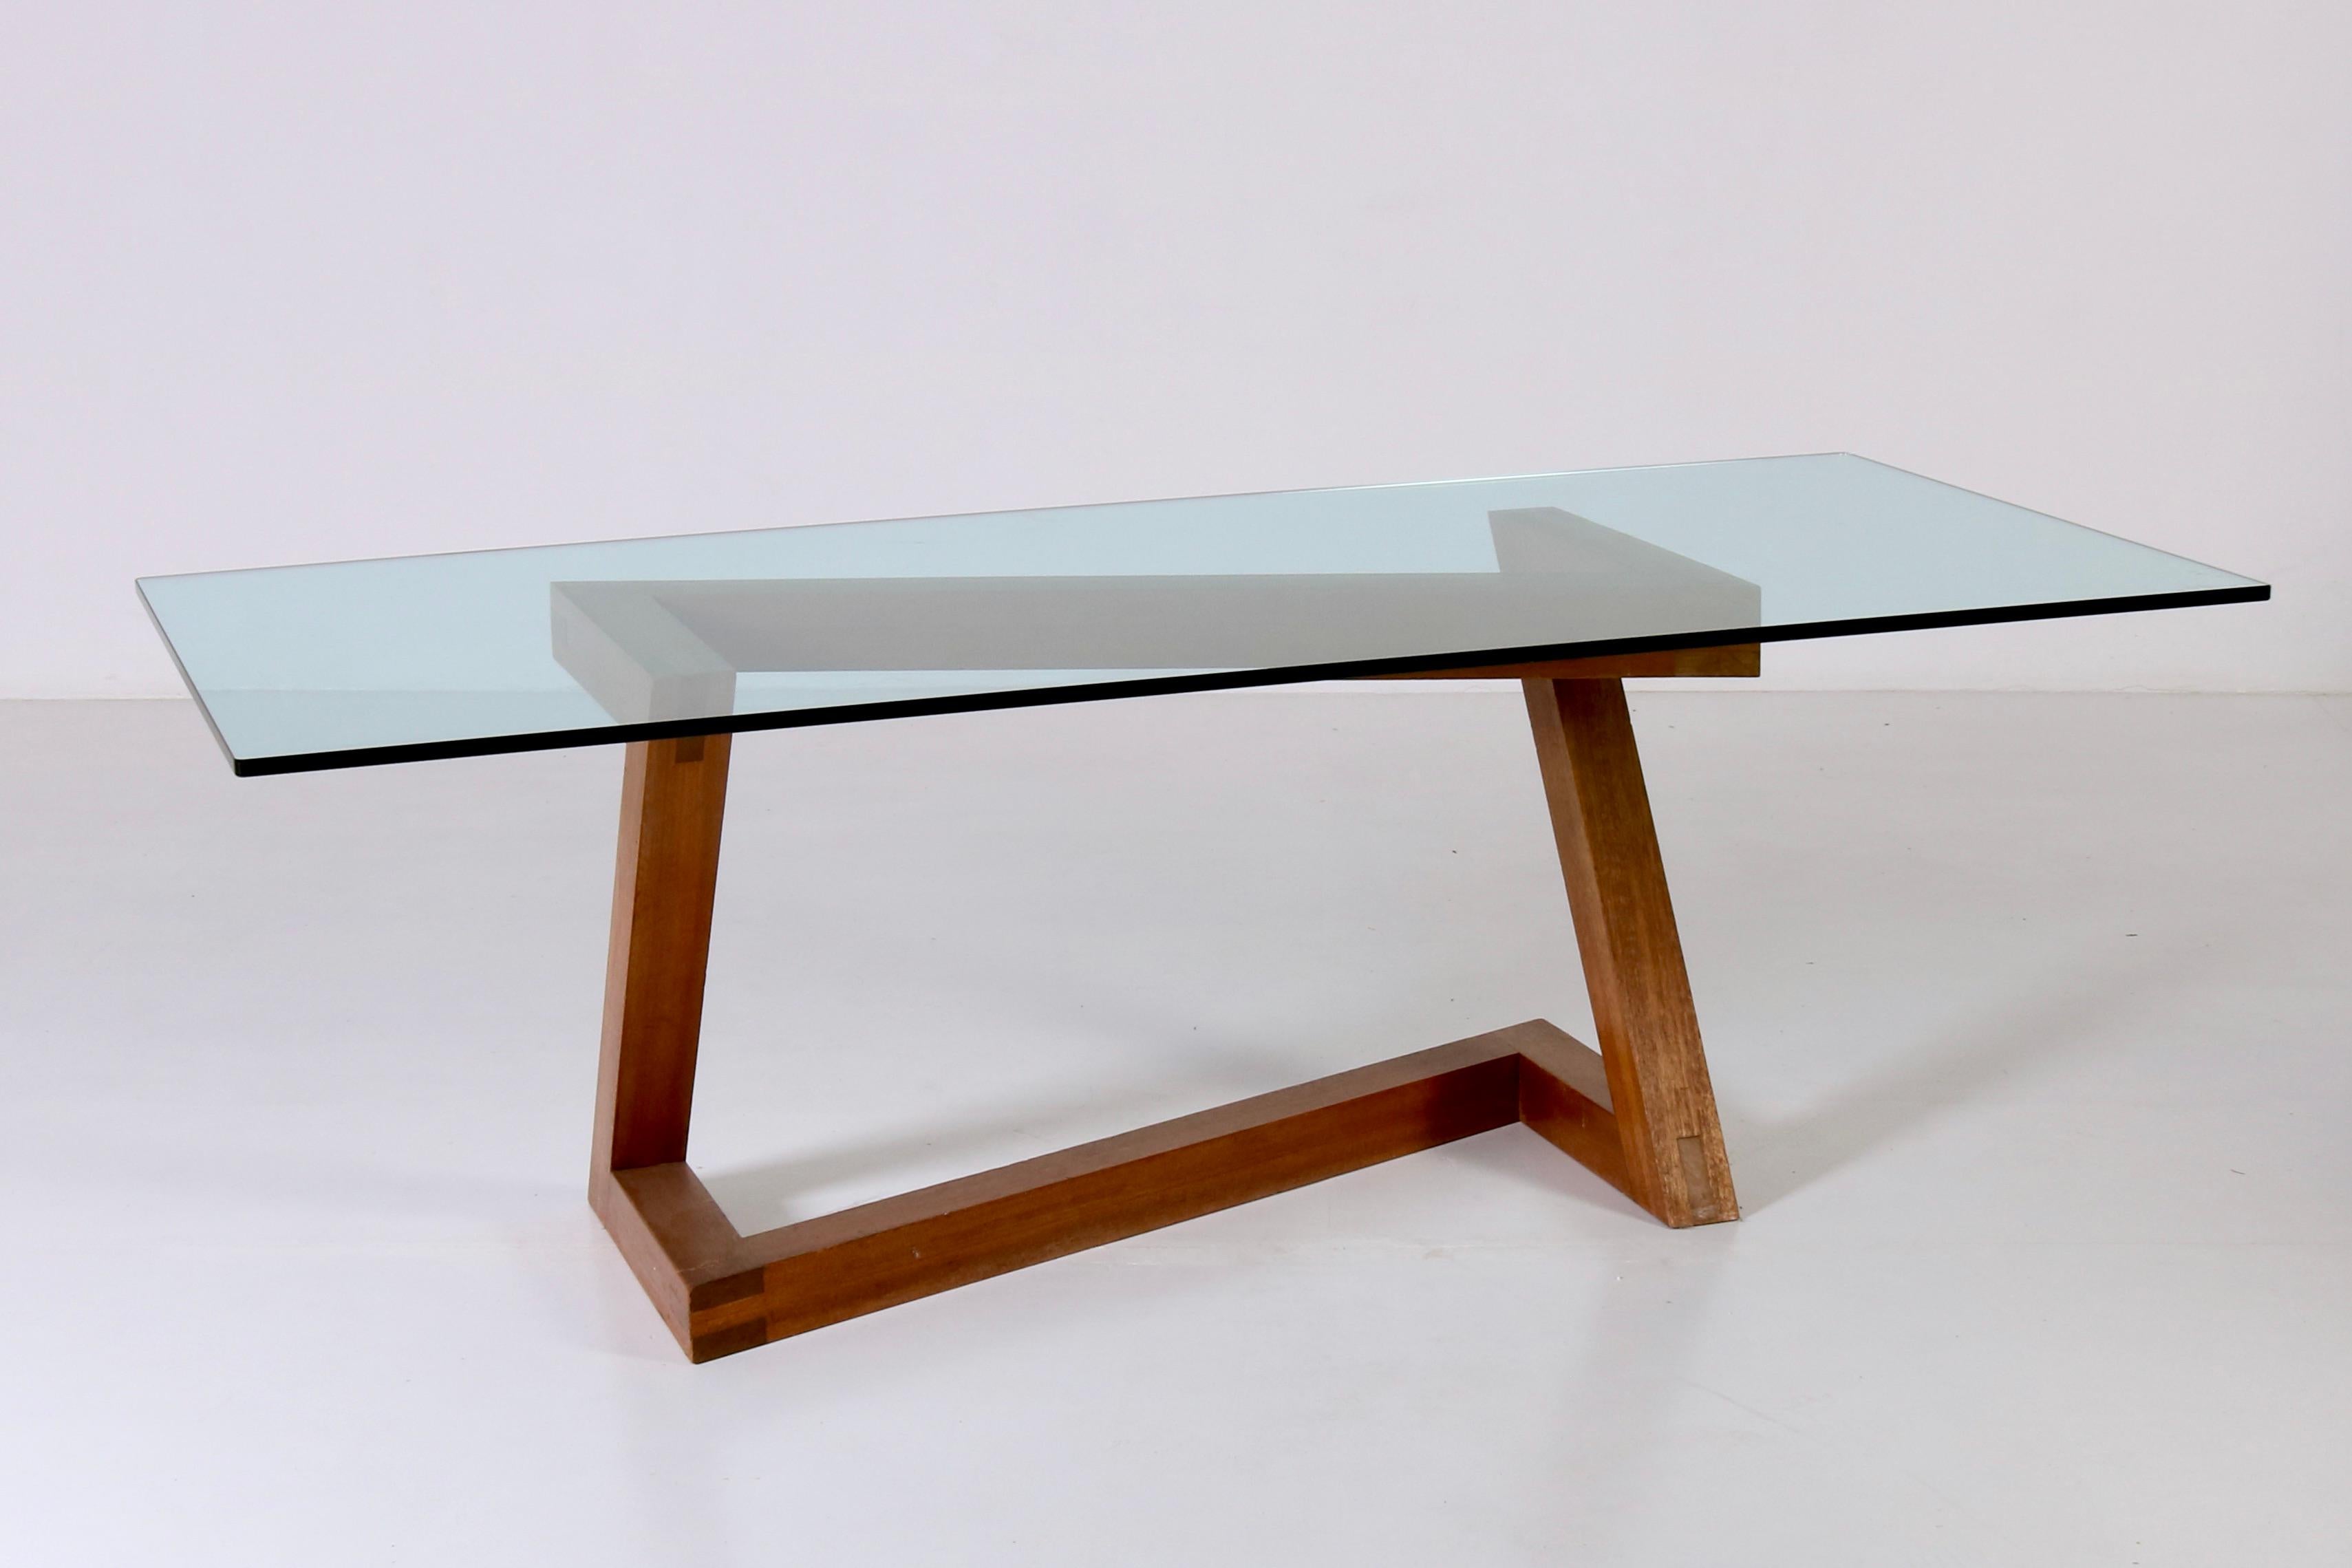 Dieser einzigartige Holztisch mit Kristallplatte hat eine starke und entscheidende Identität. Seine minimalen und doch skulpturalen Formen machen ihn zum idealen Kernstück eines geselligen Esstisches. Seine eigenwilligen Züge kristallisieren perfekt